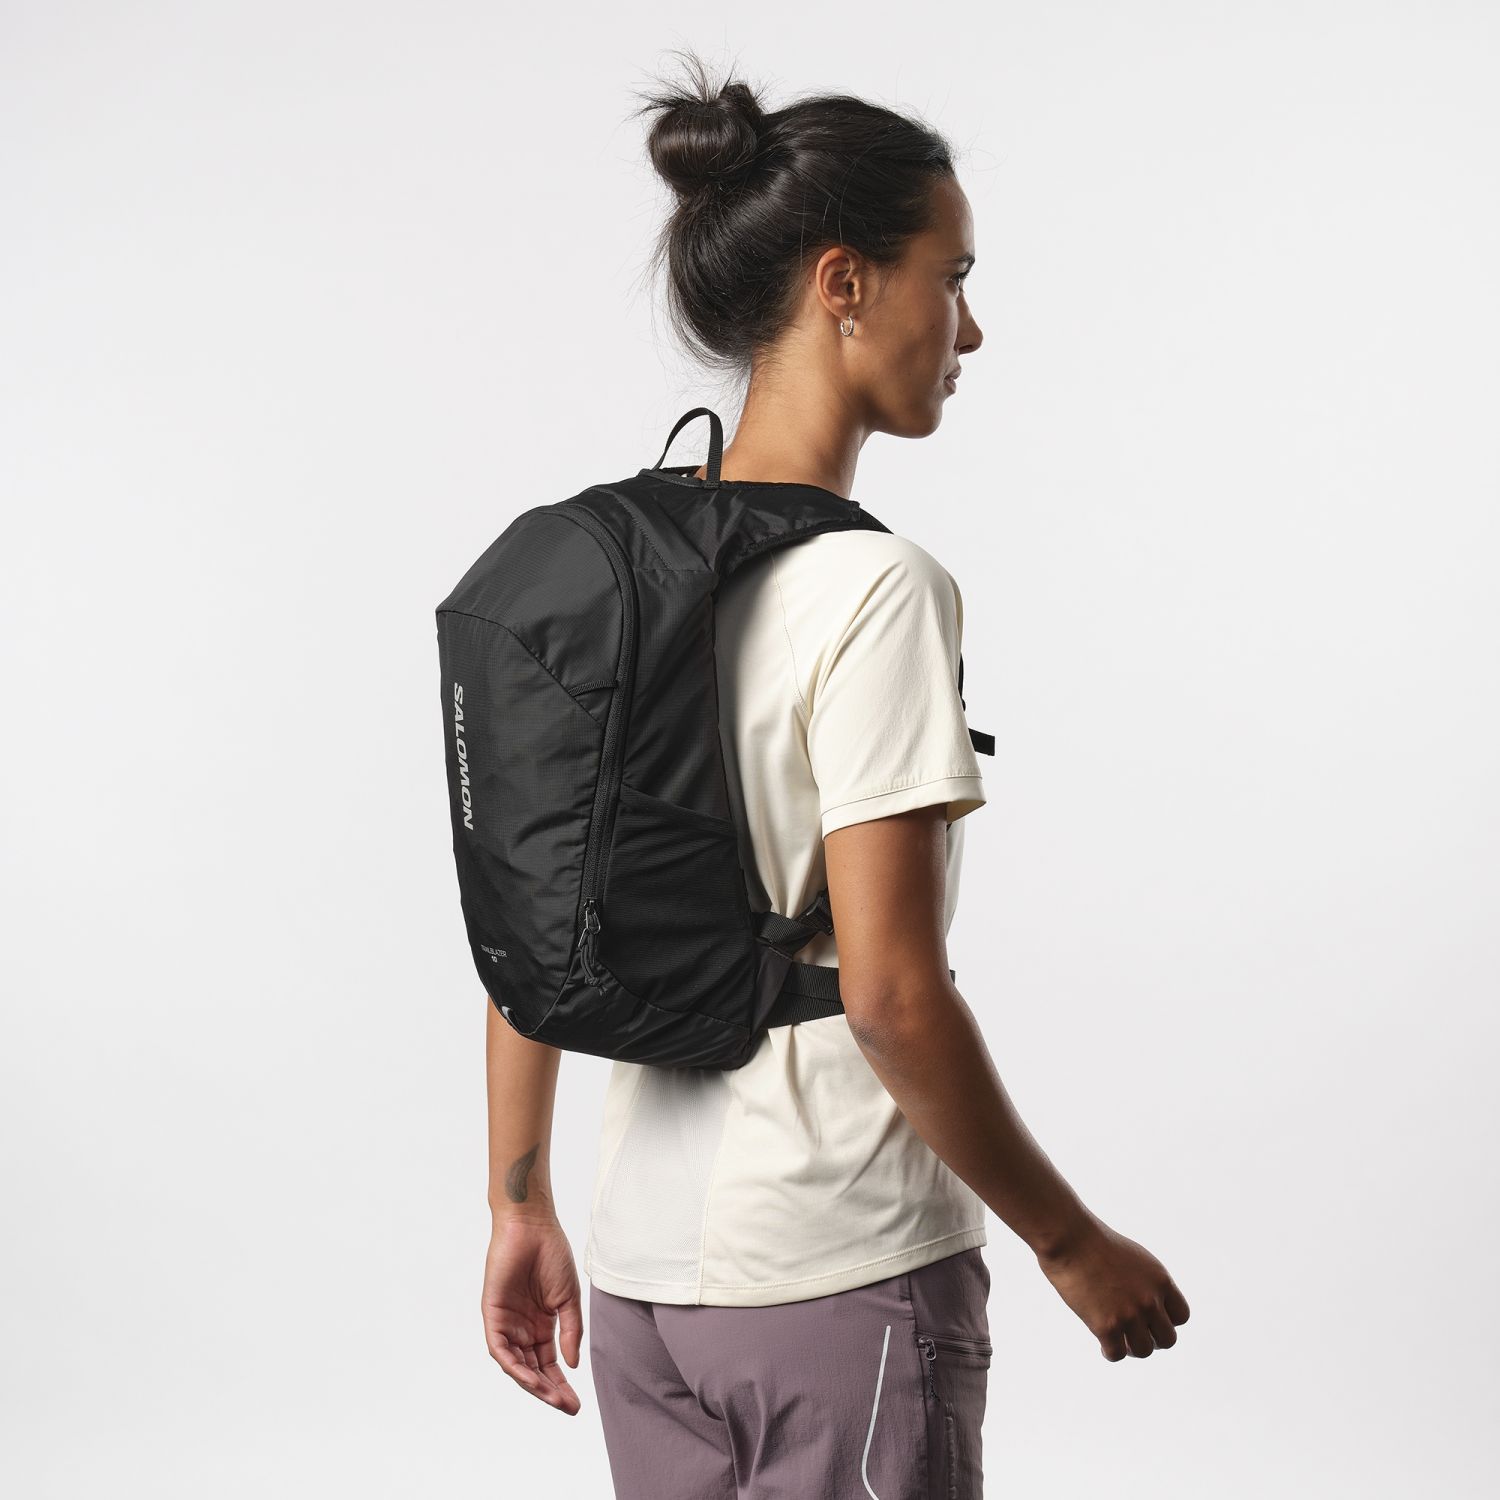 Salomon Trailblazer 10, backpack, black/allloy